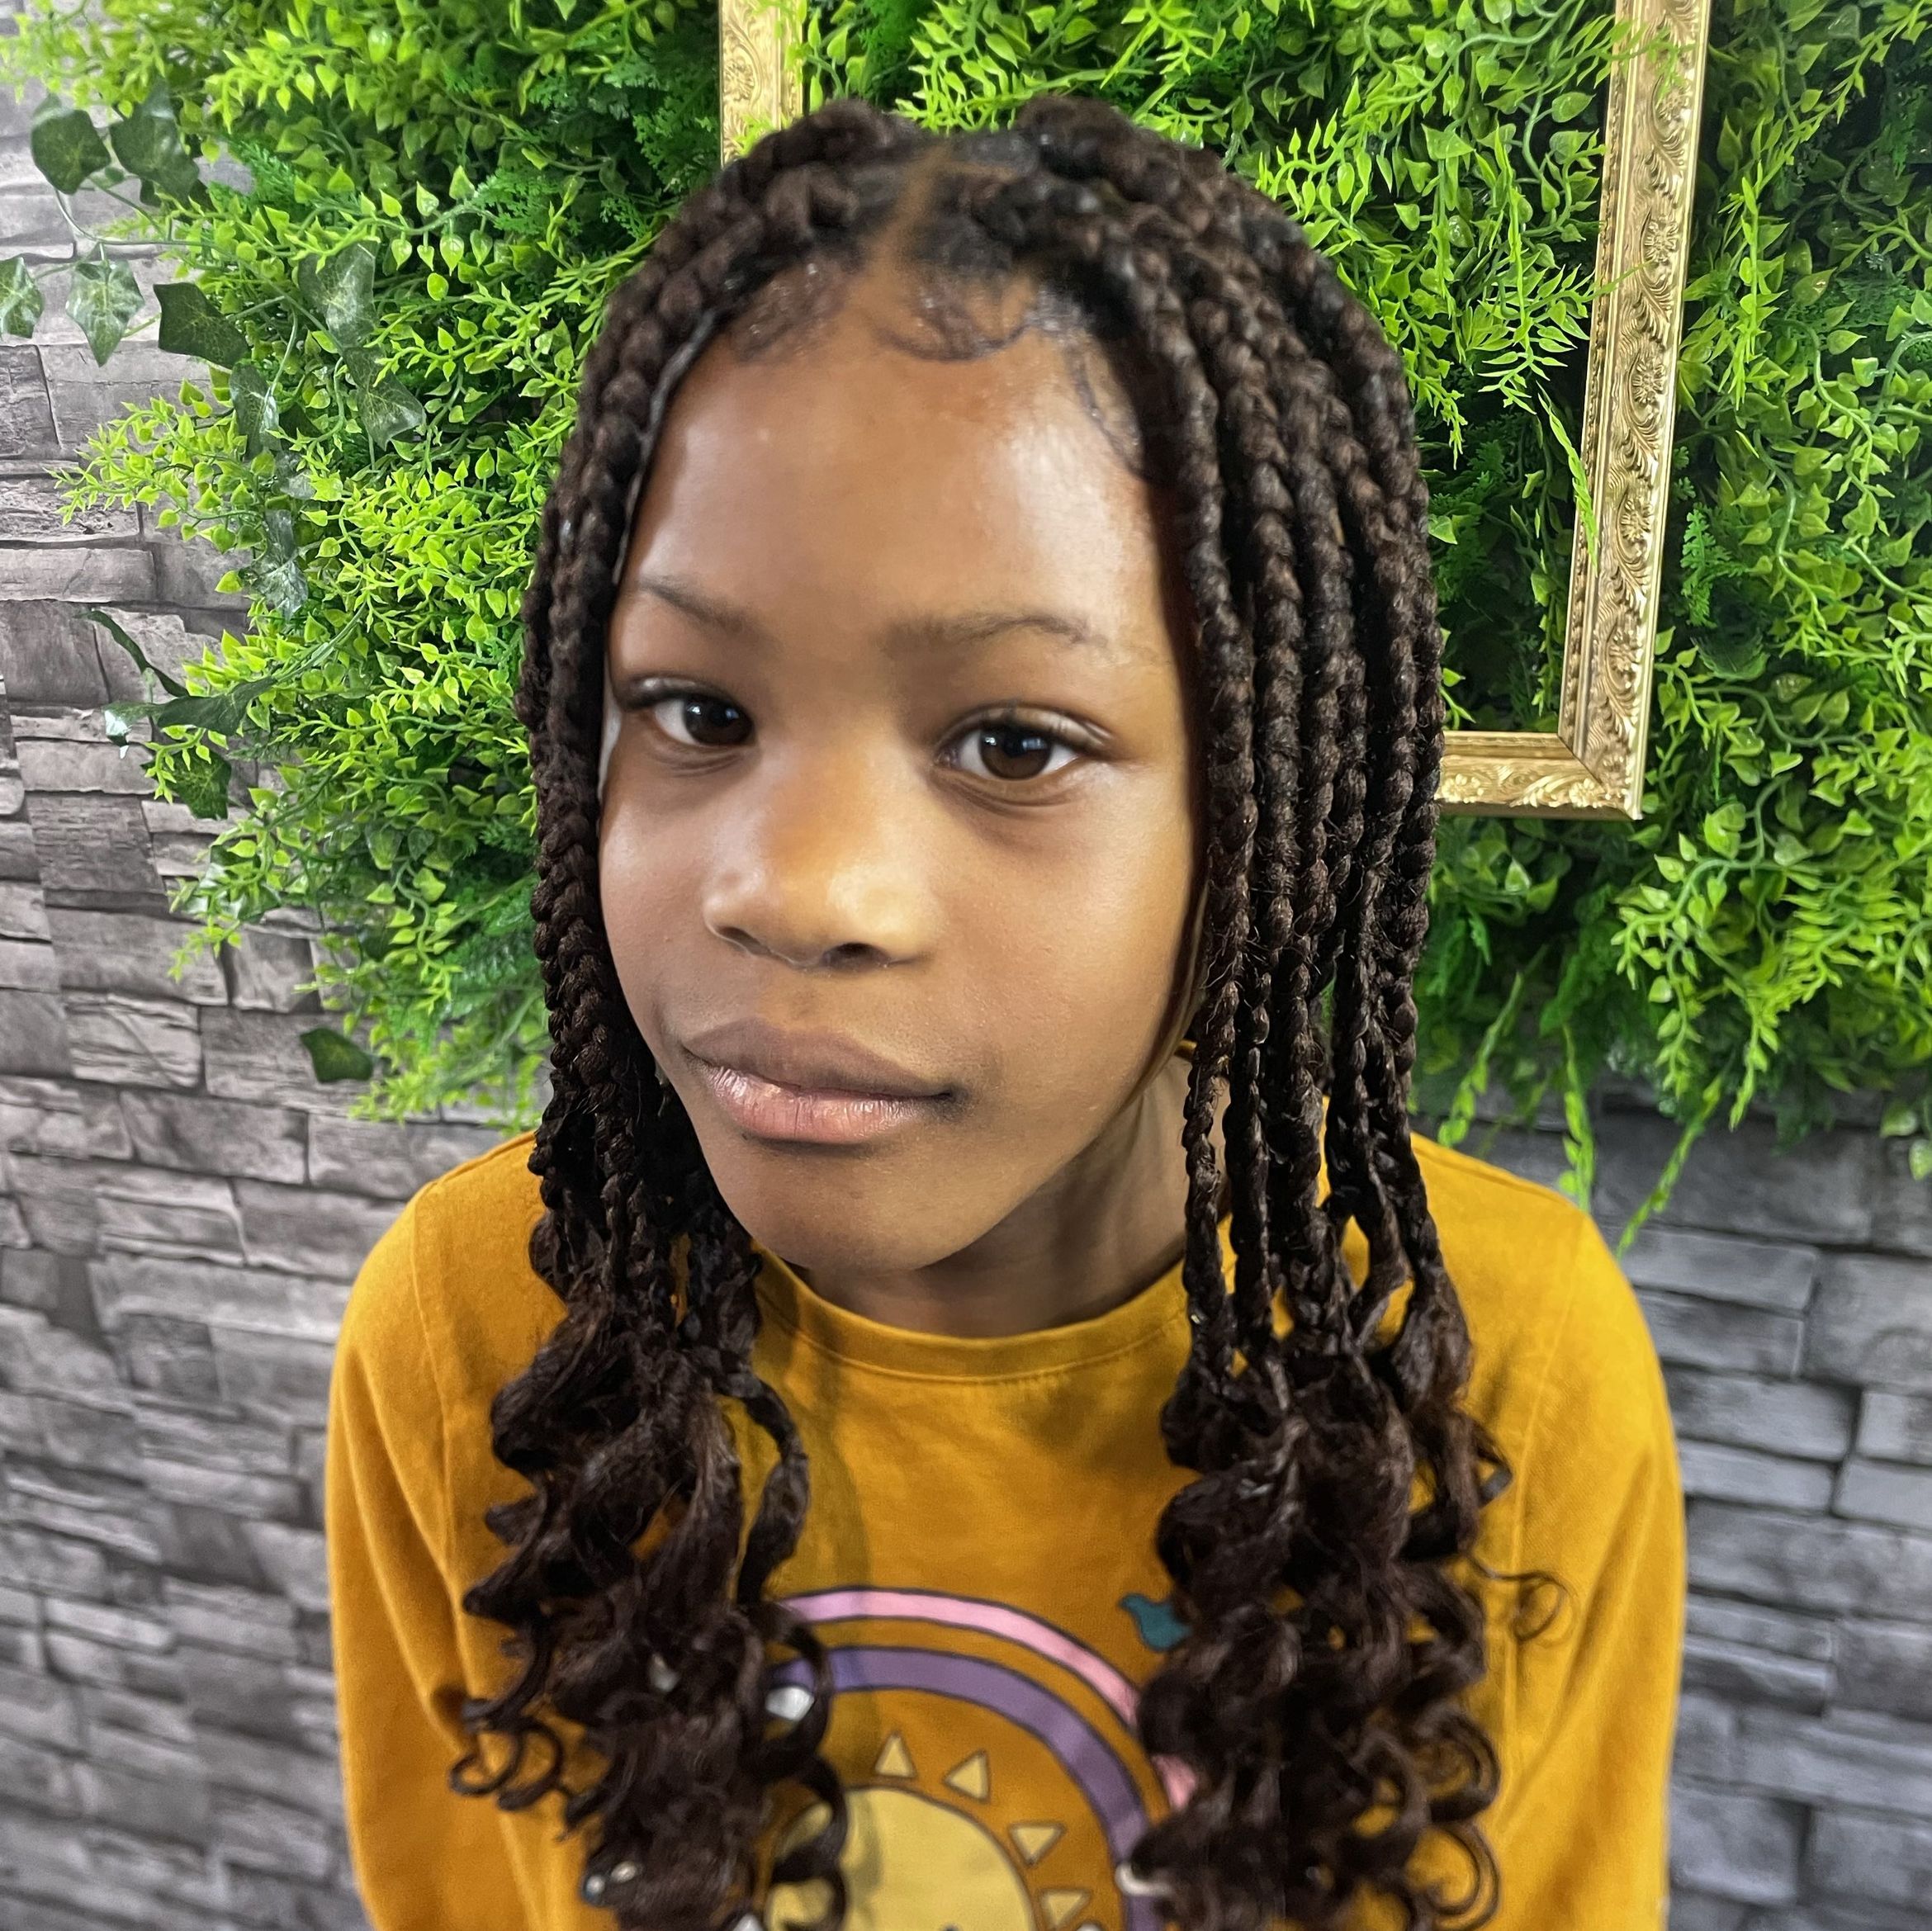 Children’s medium box braids under age 12 portfolio